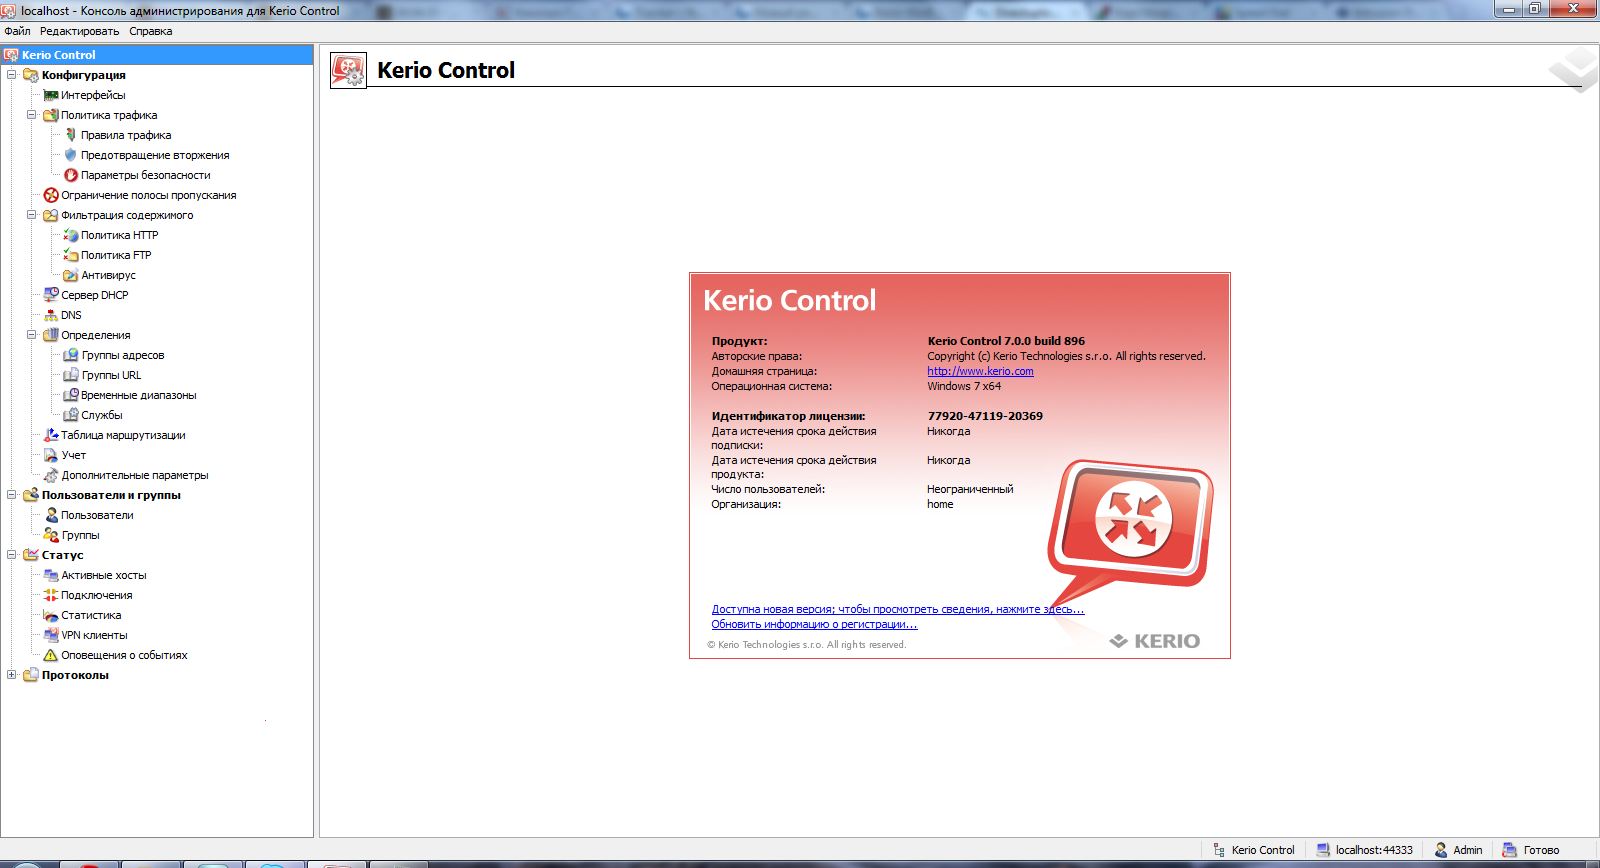 Лицензионный номер kerio Control